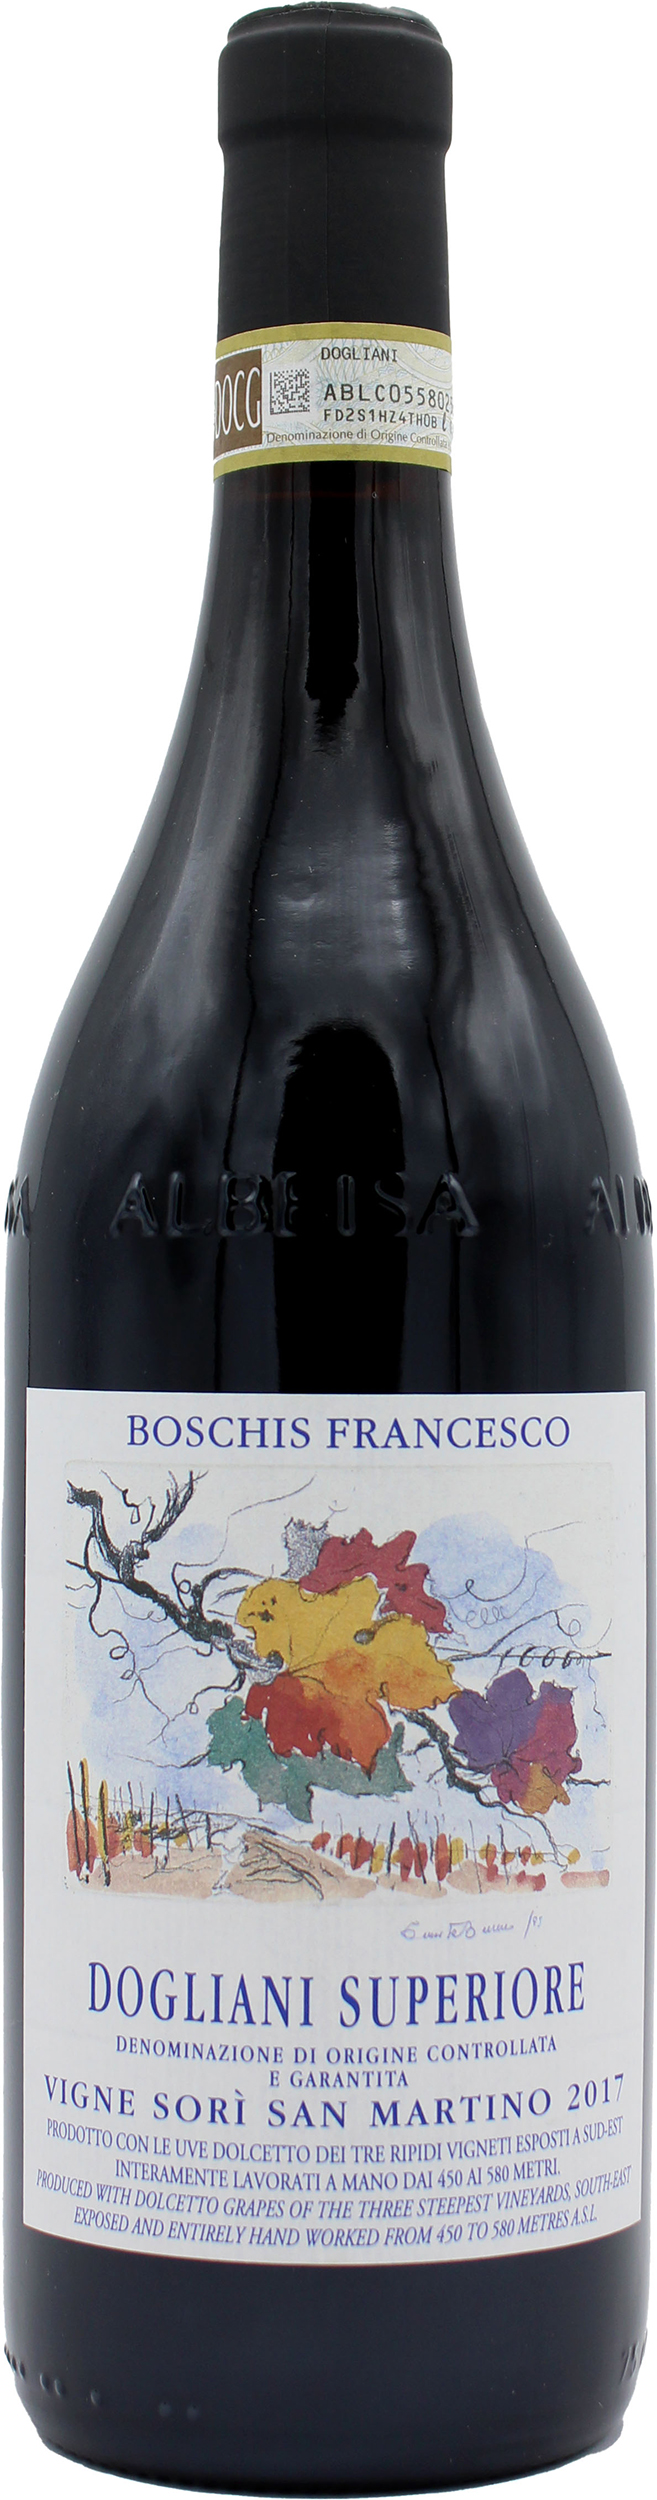 Bottle of Boschis Francesco Sorì San Martino Dogliani Superiore from search results